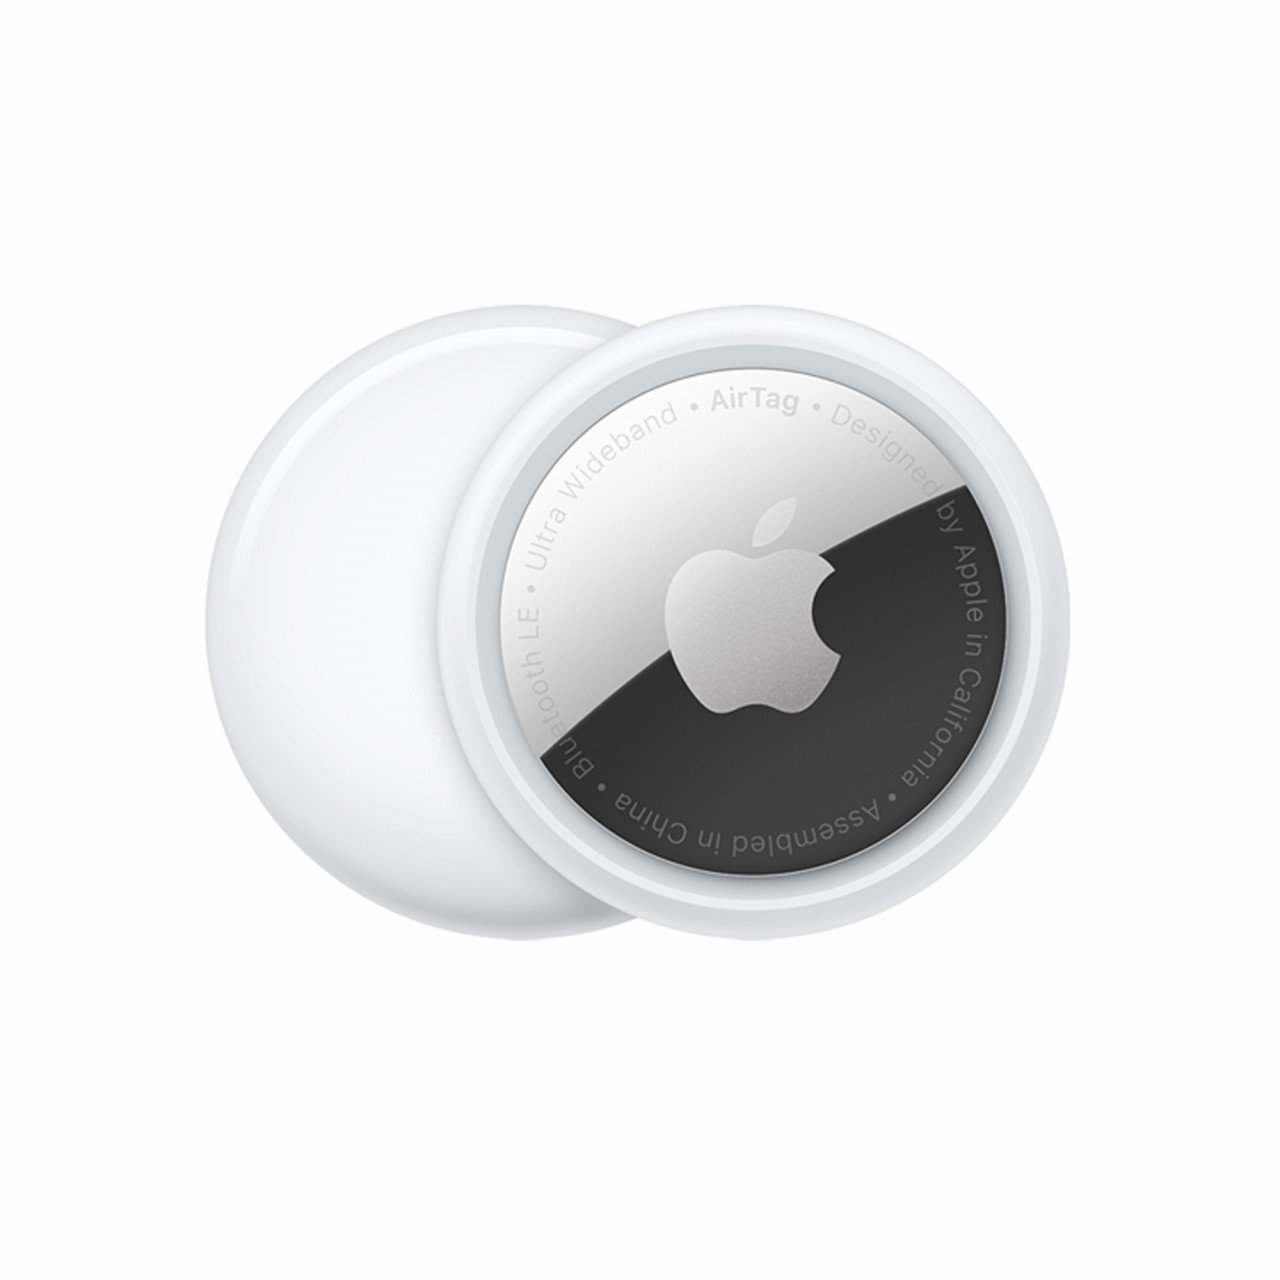 Air Tag adalah peranti penjejak pintar yang dicipta dan dikeluarkan syarikat Apple beberapa tahun lalu. - Gambar Apple